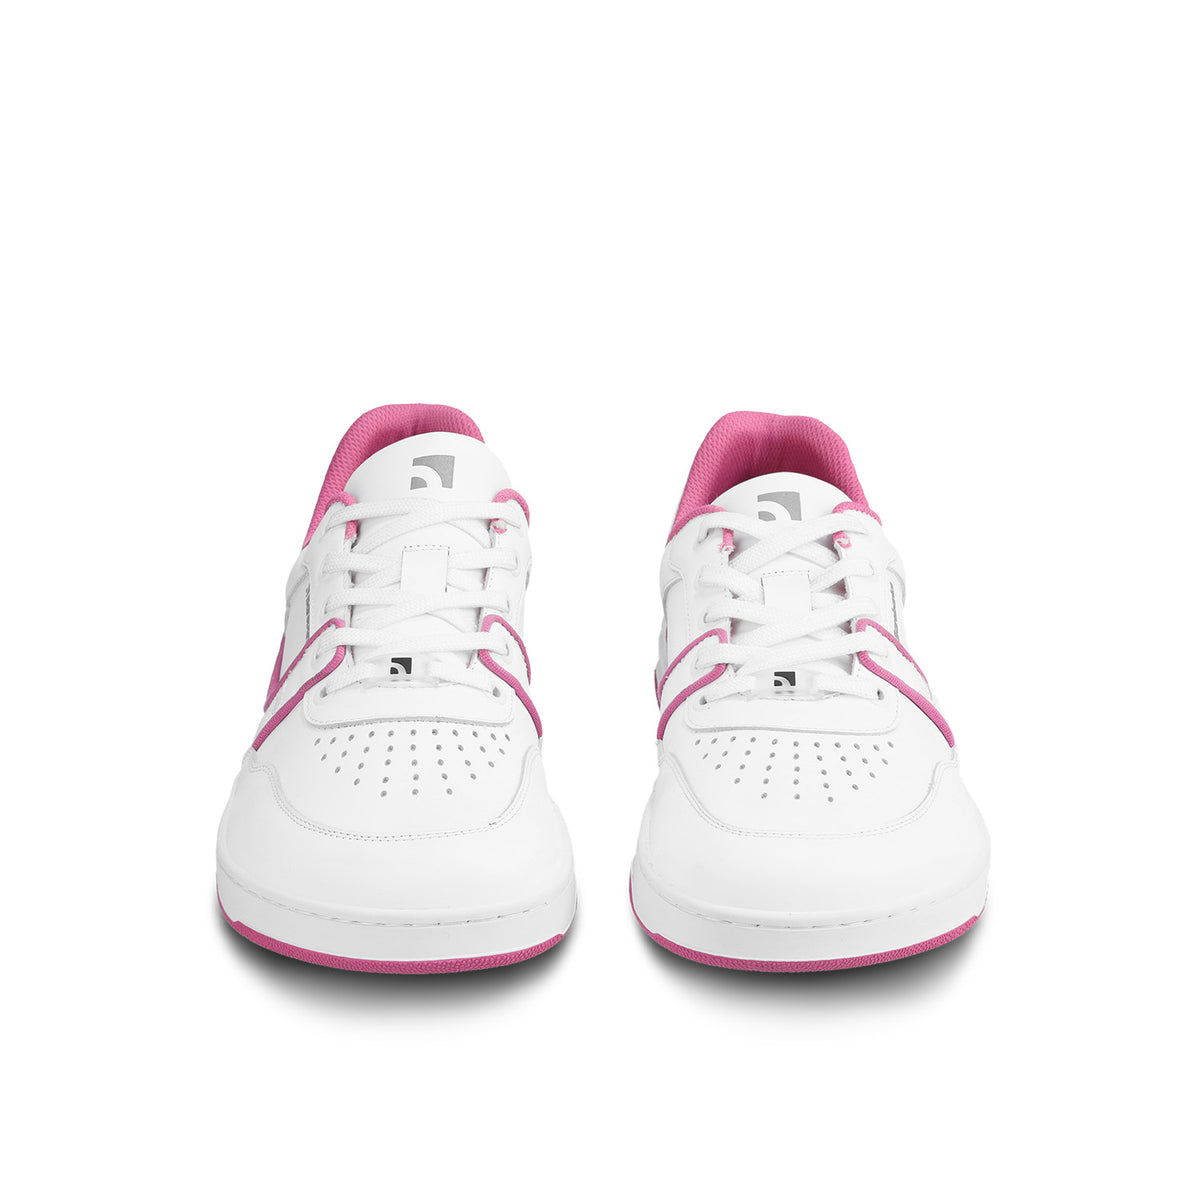 Barefoot Sneakers Barebarics Arise - White & Raspberry Pink 4  - OzBarefoot